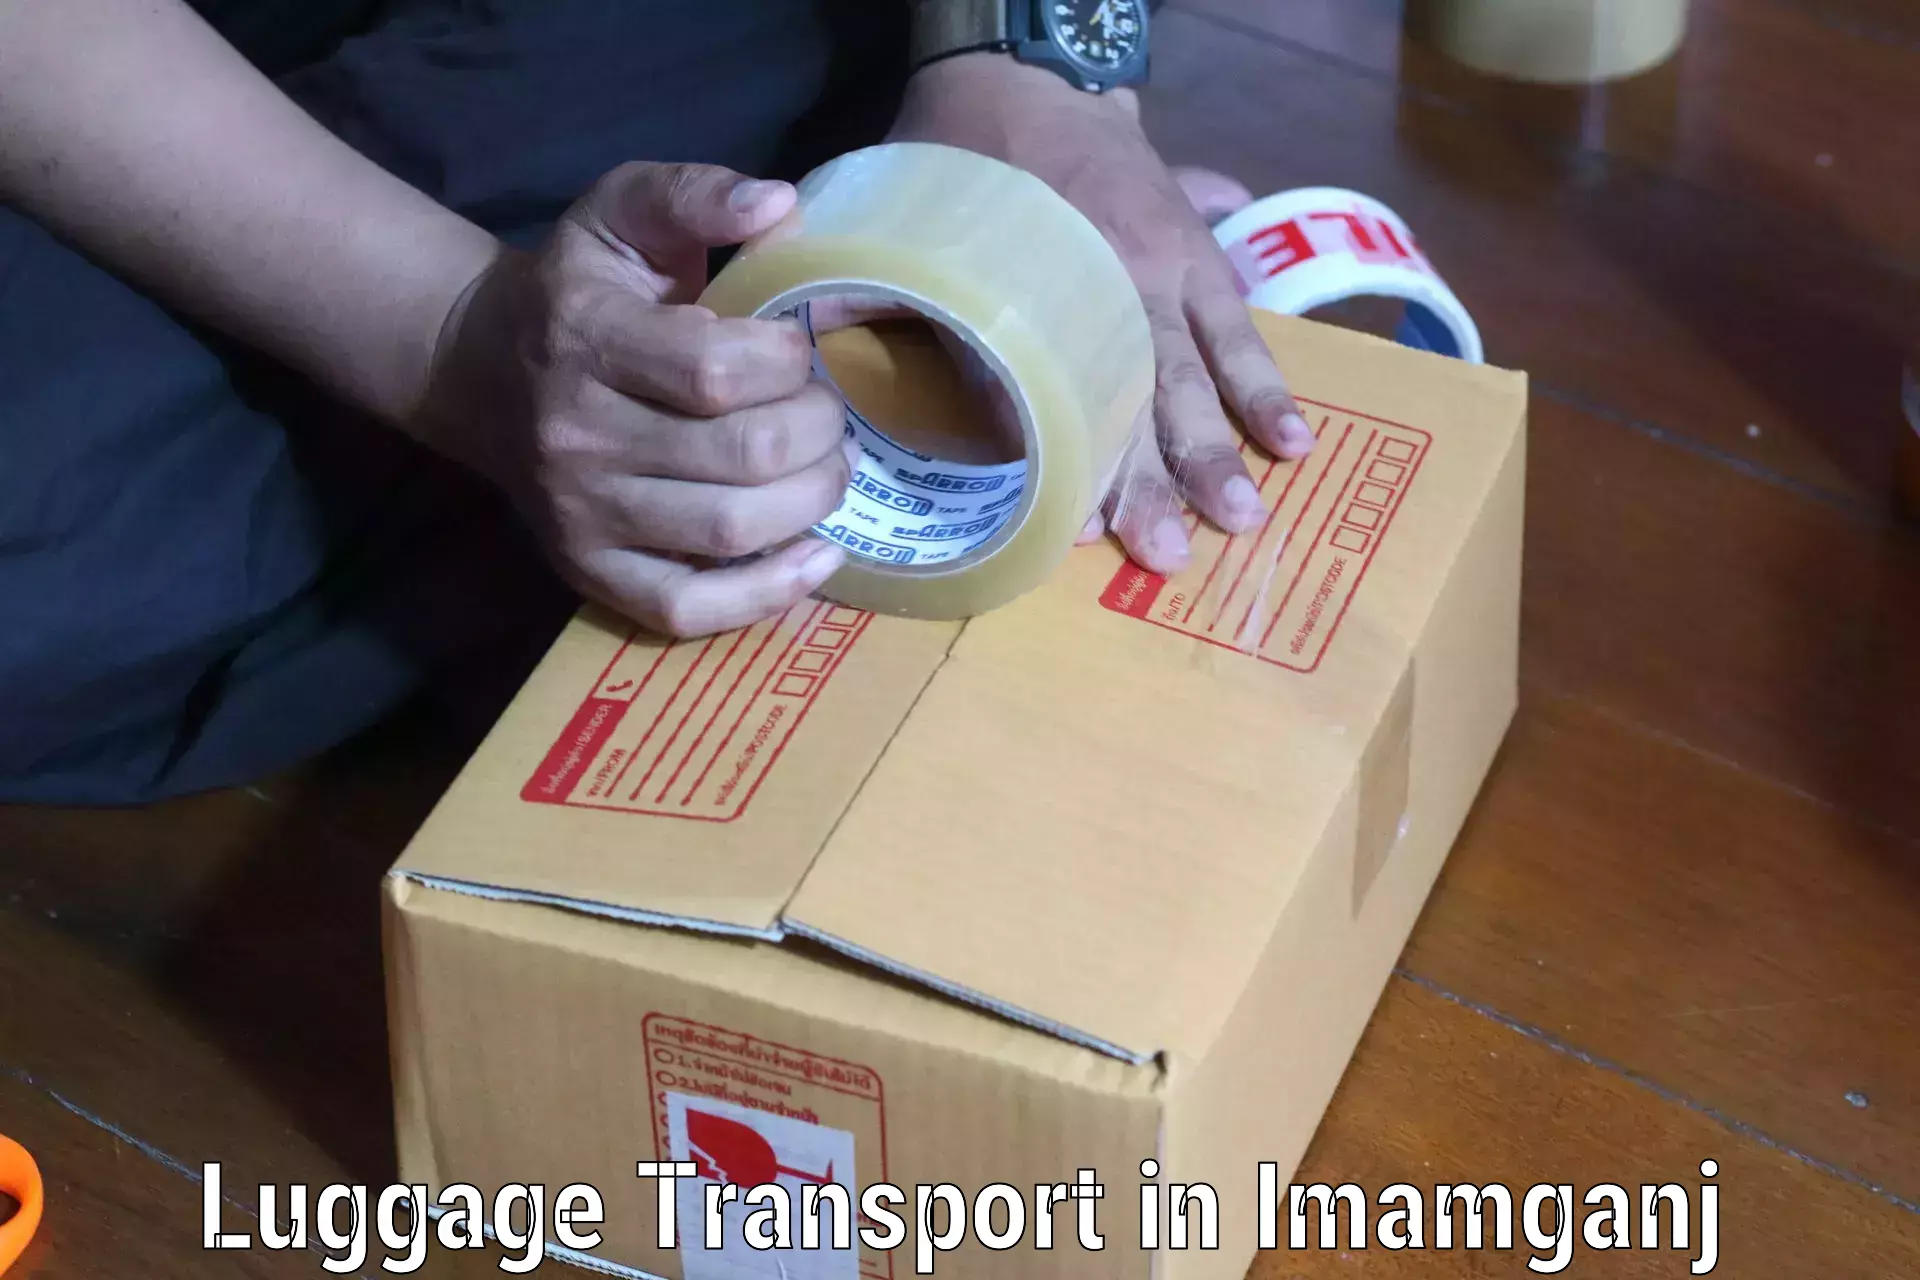 Luggage transfer service in Imamganj